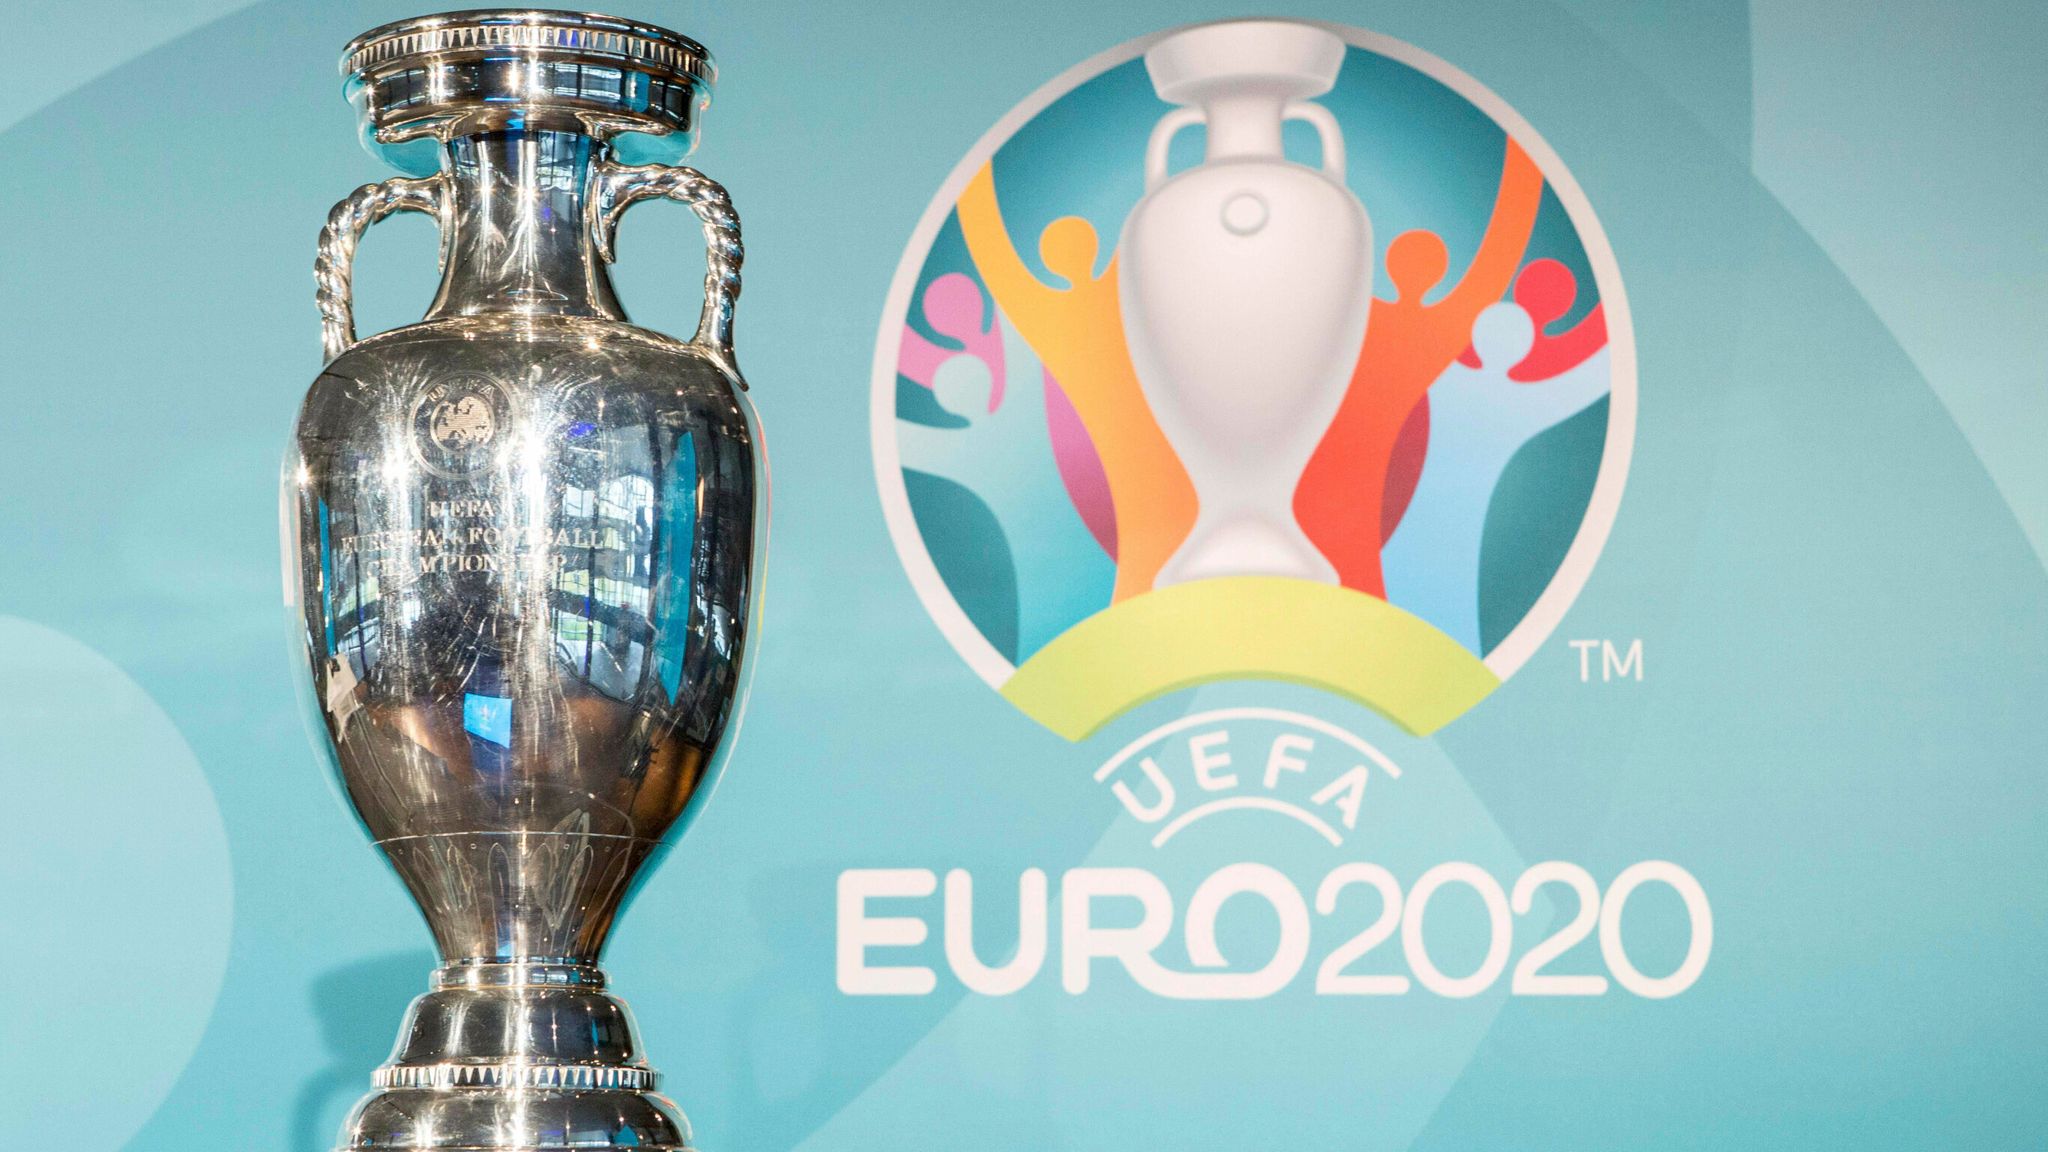 Έναρξη του Euro 2020 - Αφιερωμένο στην έναρξη του ευρωπαϊκού πρωταθλήματος ποδοσφαίρου το Google Doodle